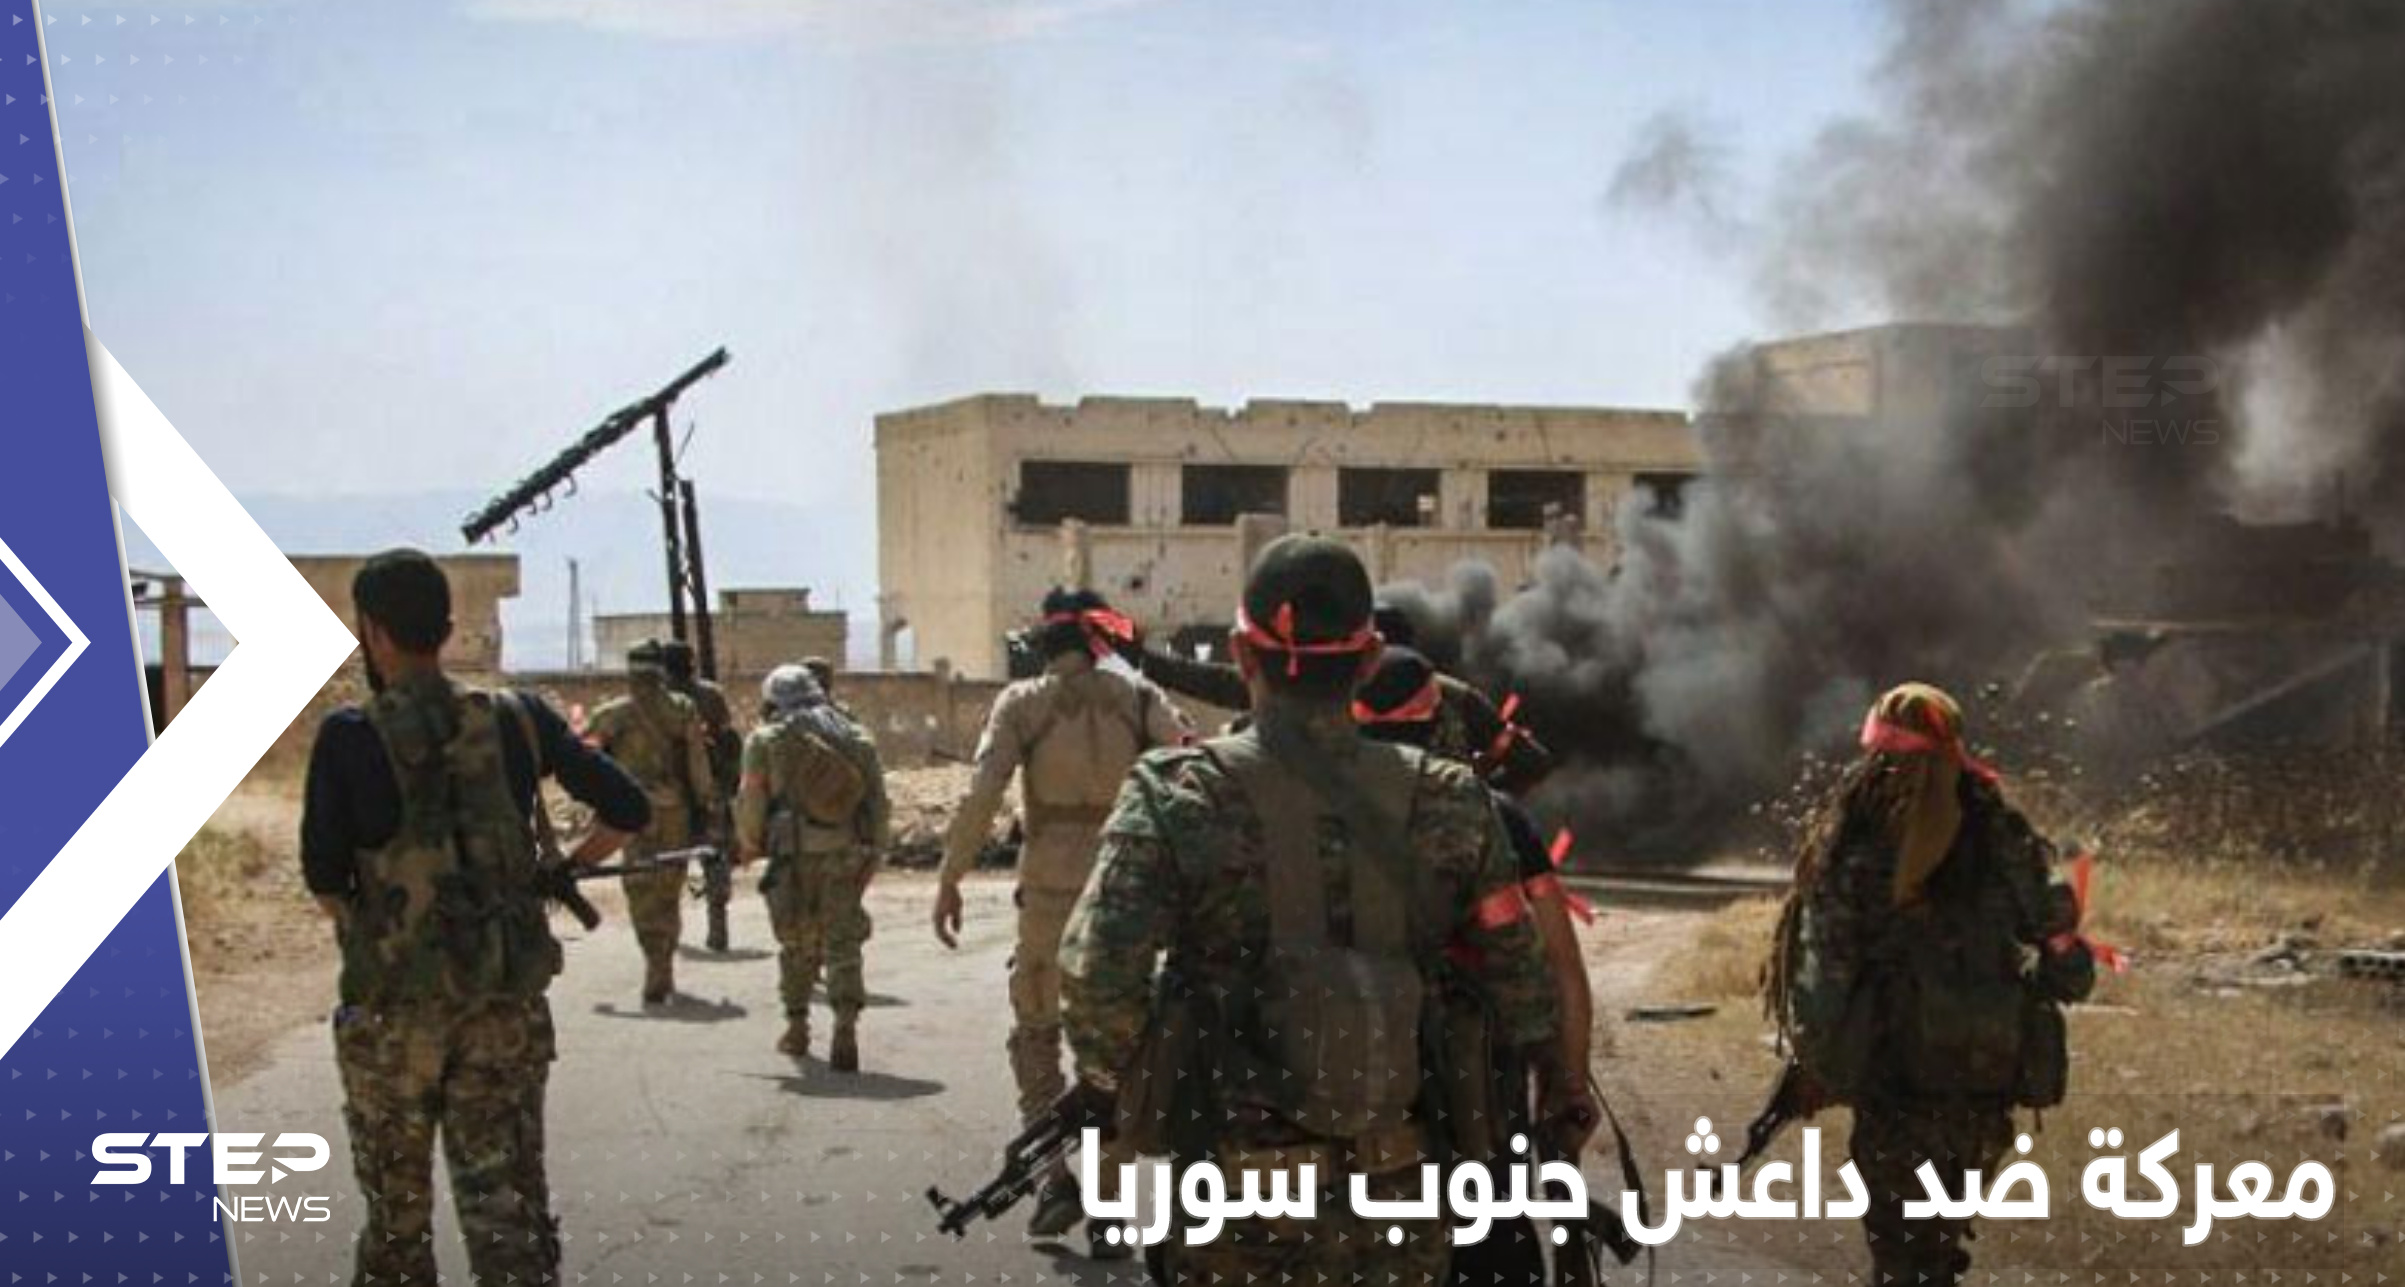 معركة بين مقاتلين من أبناء درعا وقادة تنظيم داعش جنوب سوريا